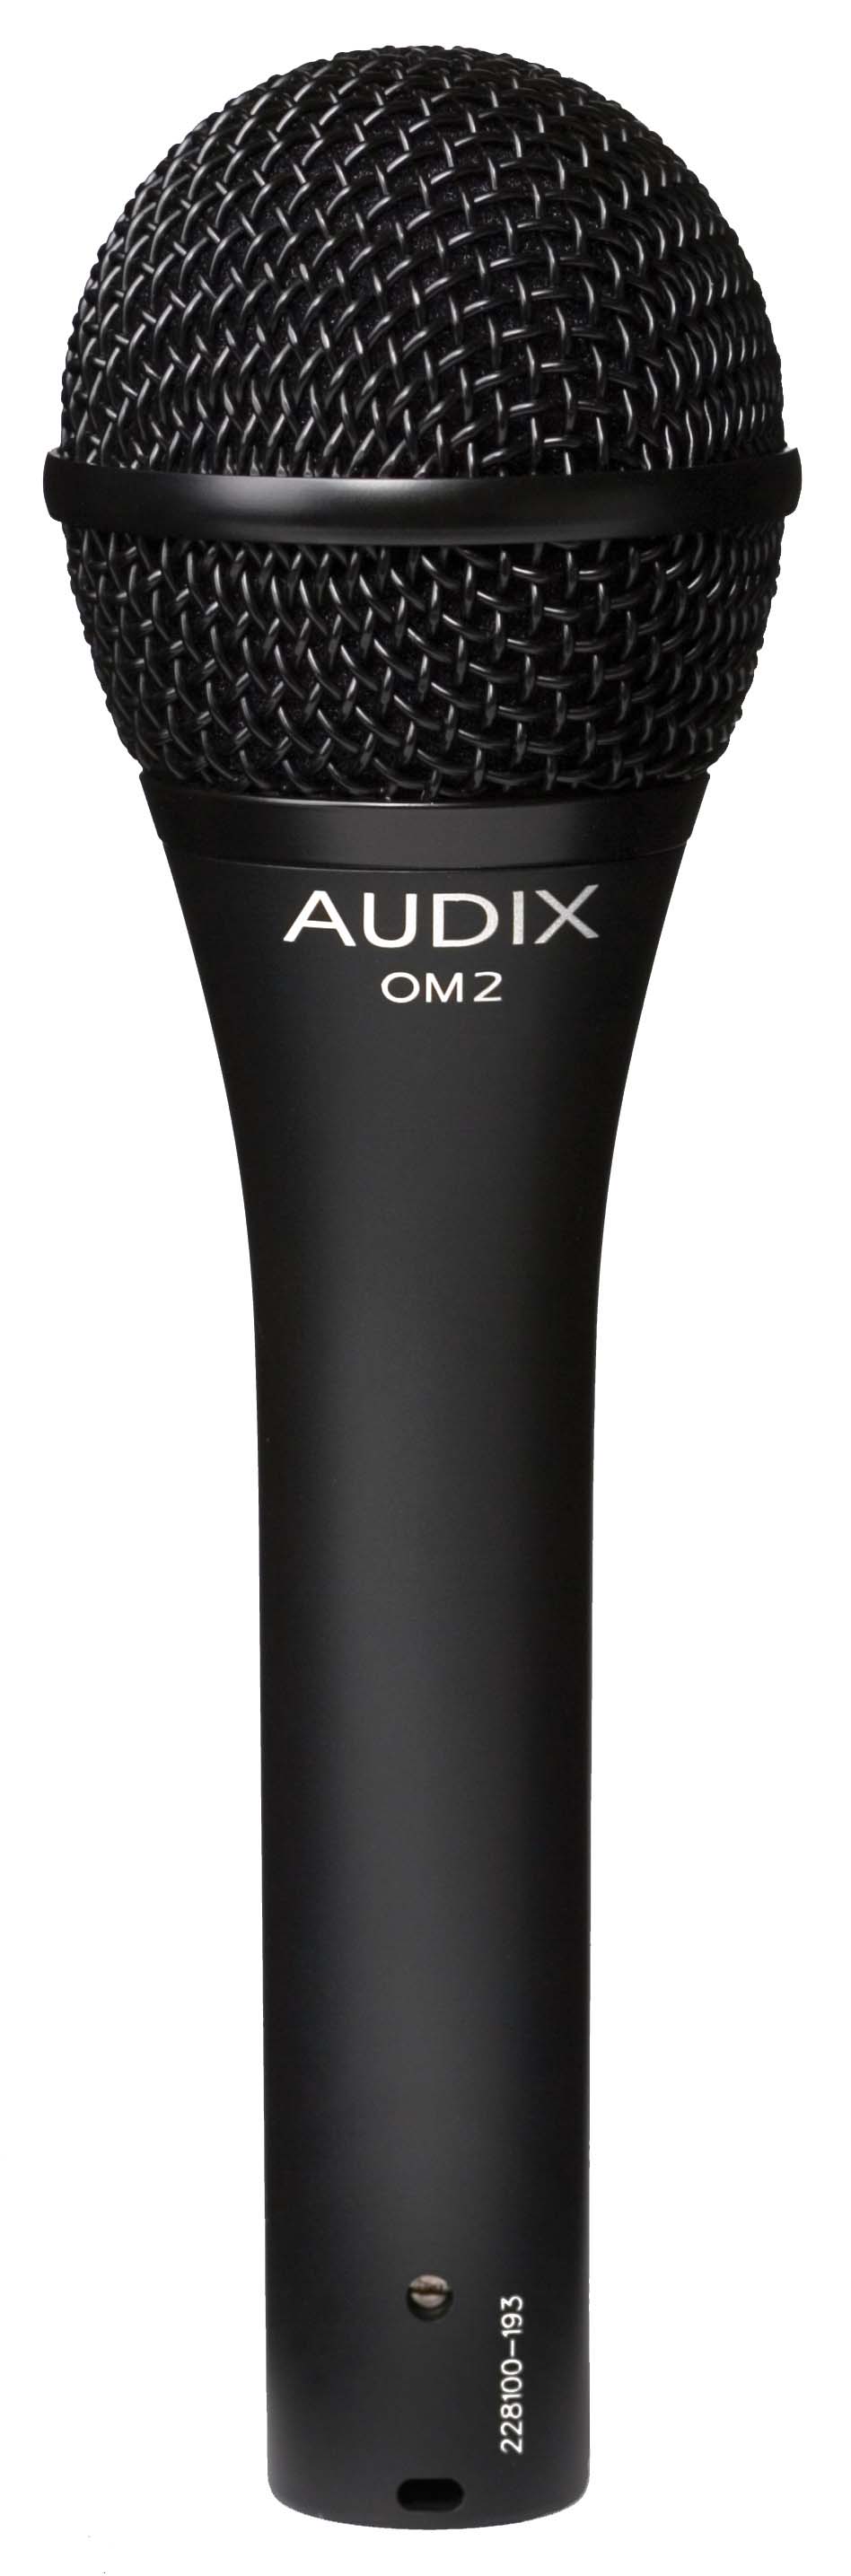 Ручные микрофоны AUDIX OM2 ручные микрофоны audix om2